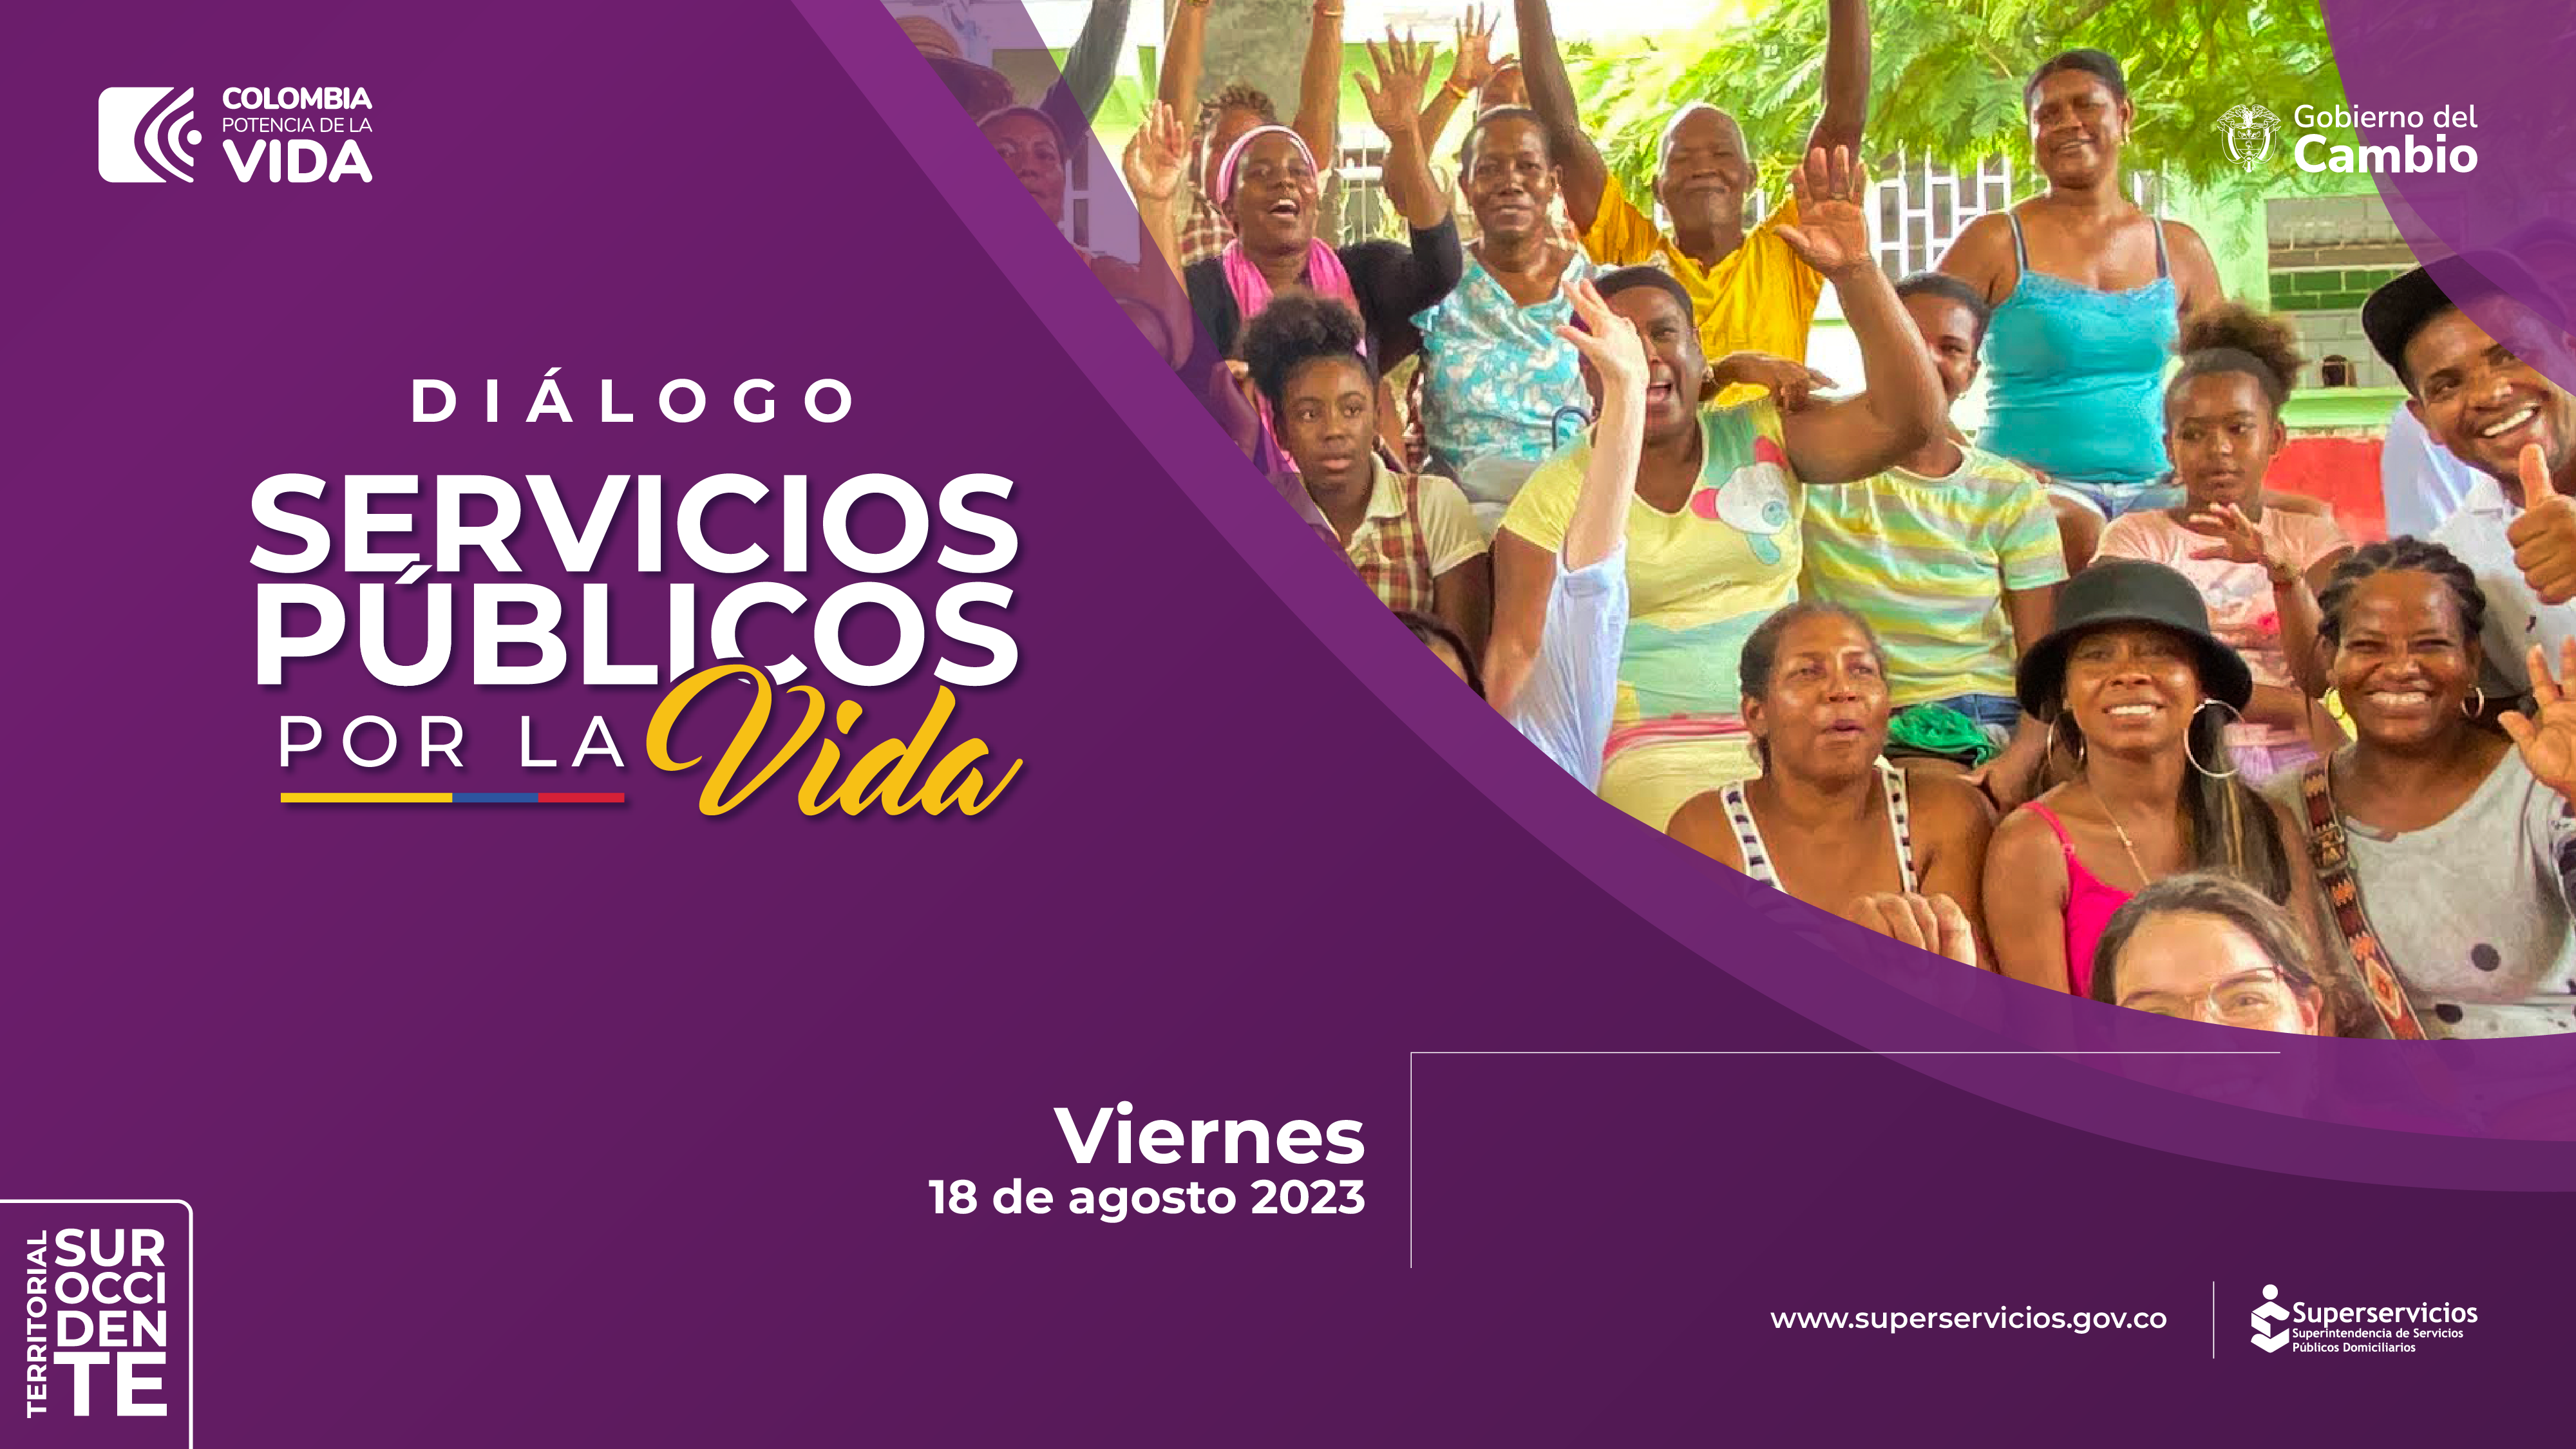 imagen para invitar al “Diálogo Servicios Públicos por la Vida”, en Cartago, Valle del Cauca 